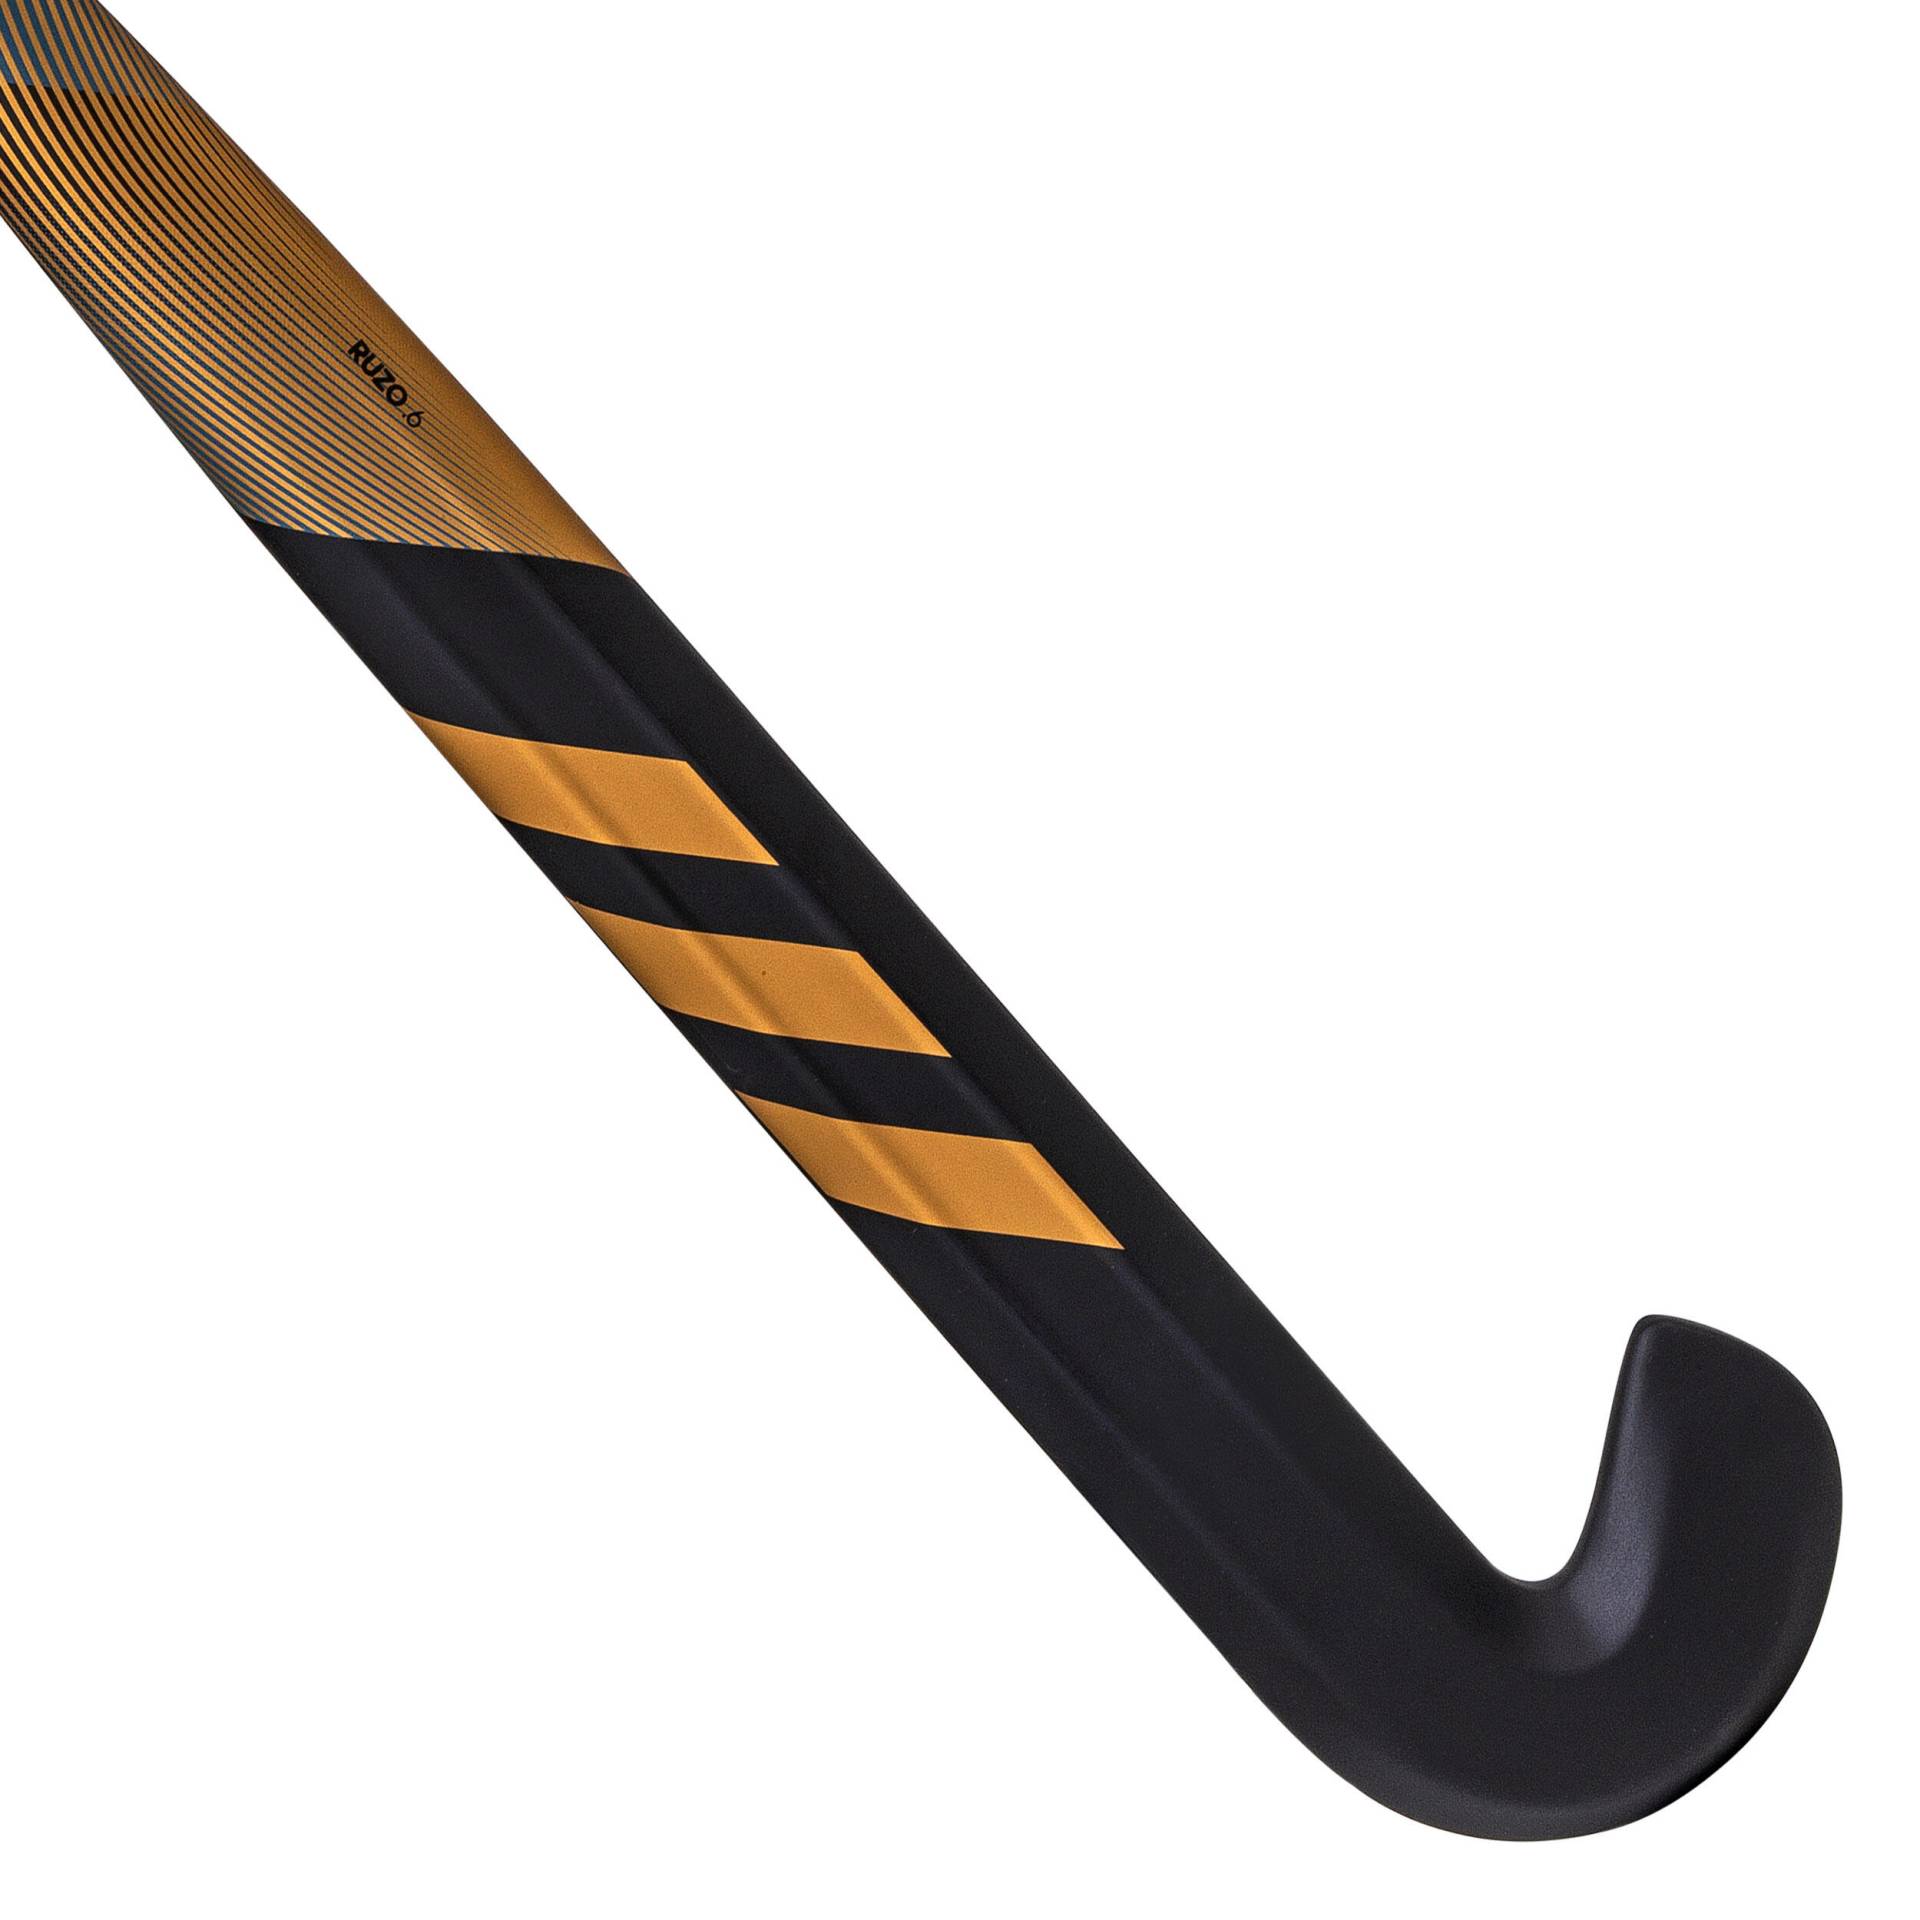 Damen/Herren Feldhockeyschläger für Fortgeschrittene Low Bow 30 % Carbon - Ruzo.6 gold/schwarz von Adidas